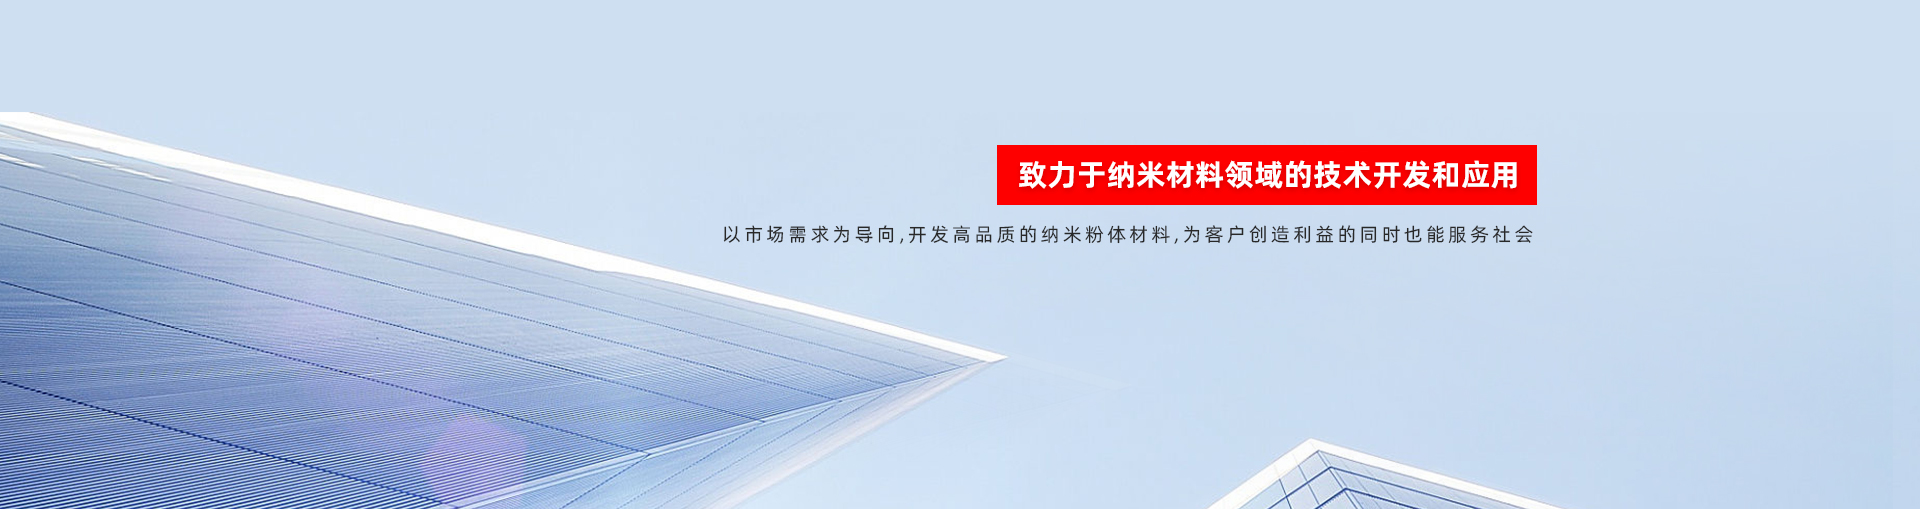 上海允复纳米科技有限公司